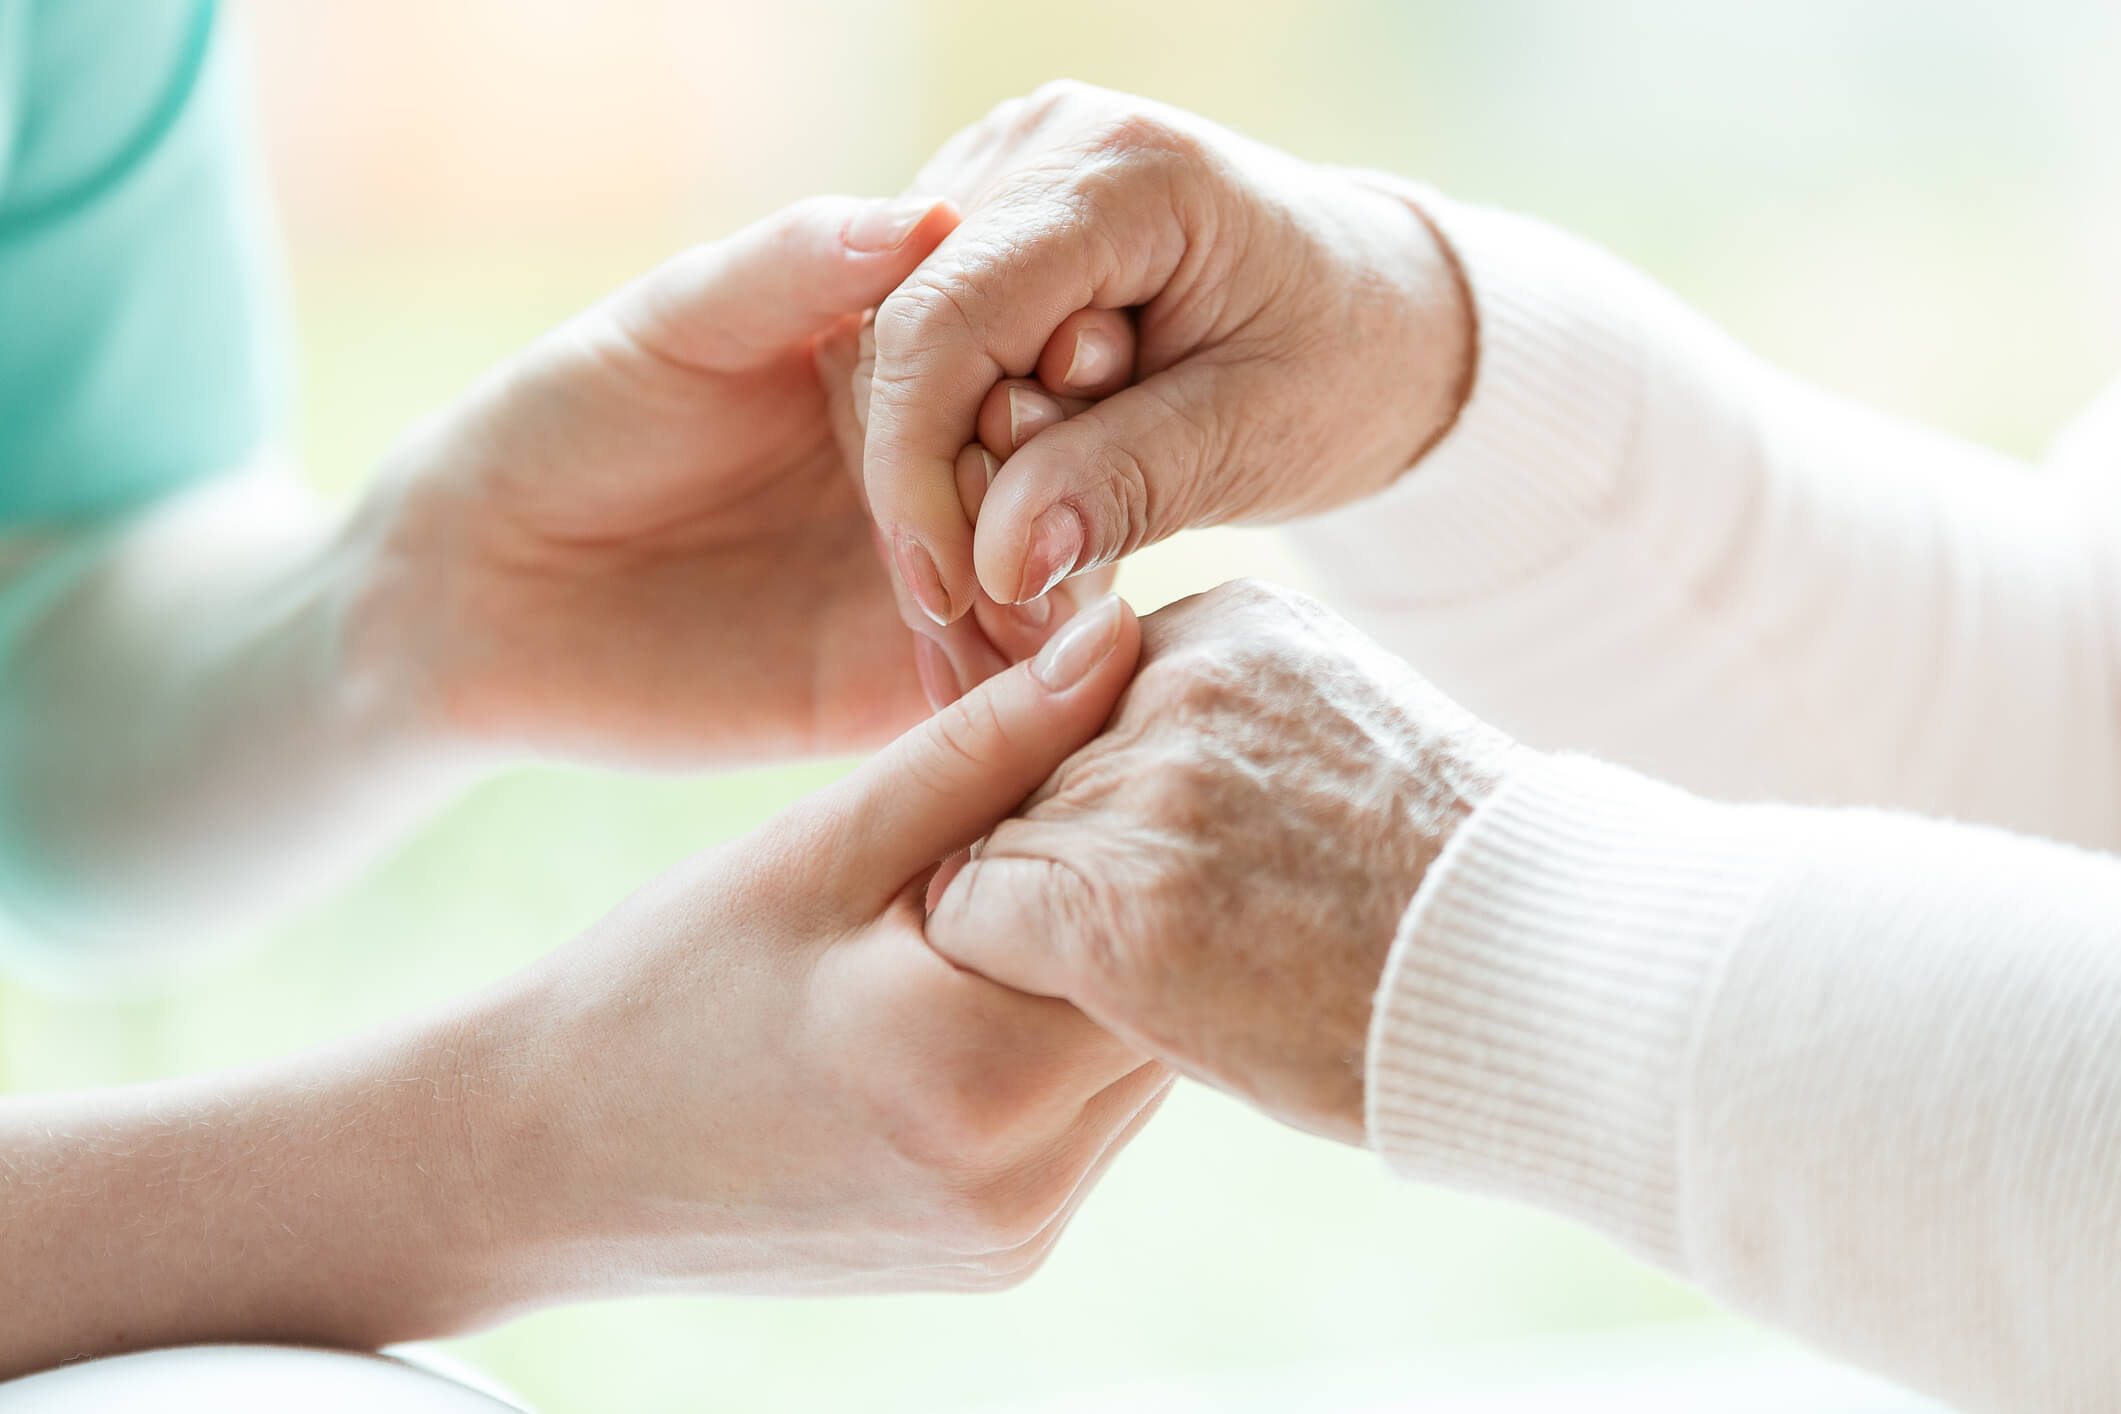 caregiver providing compassionate care to client